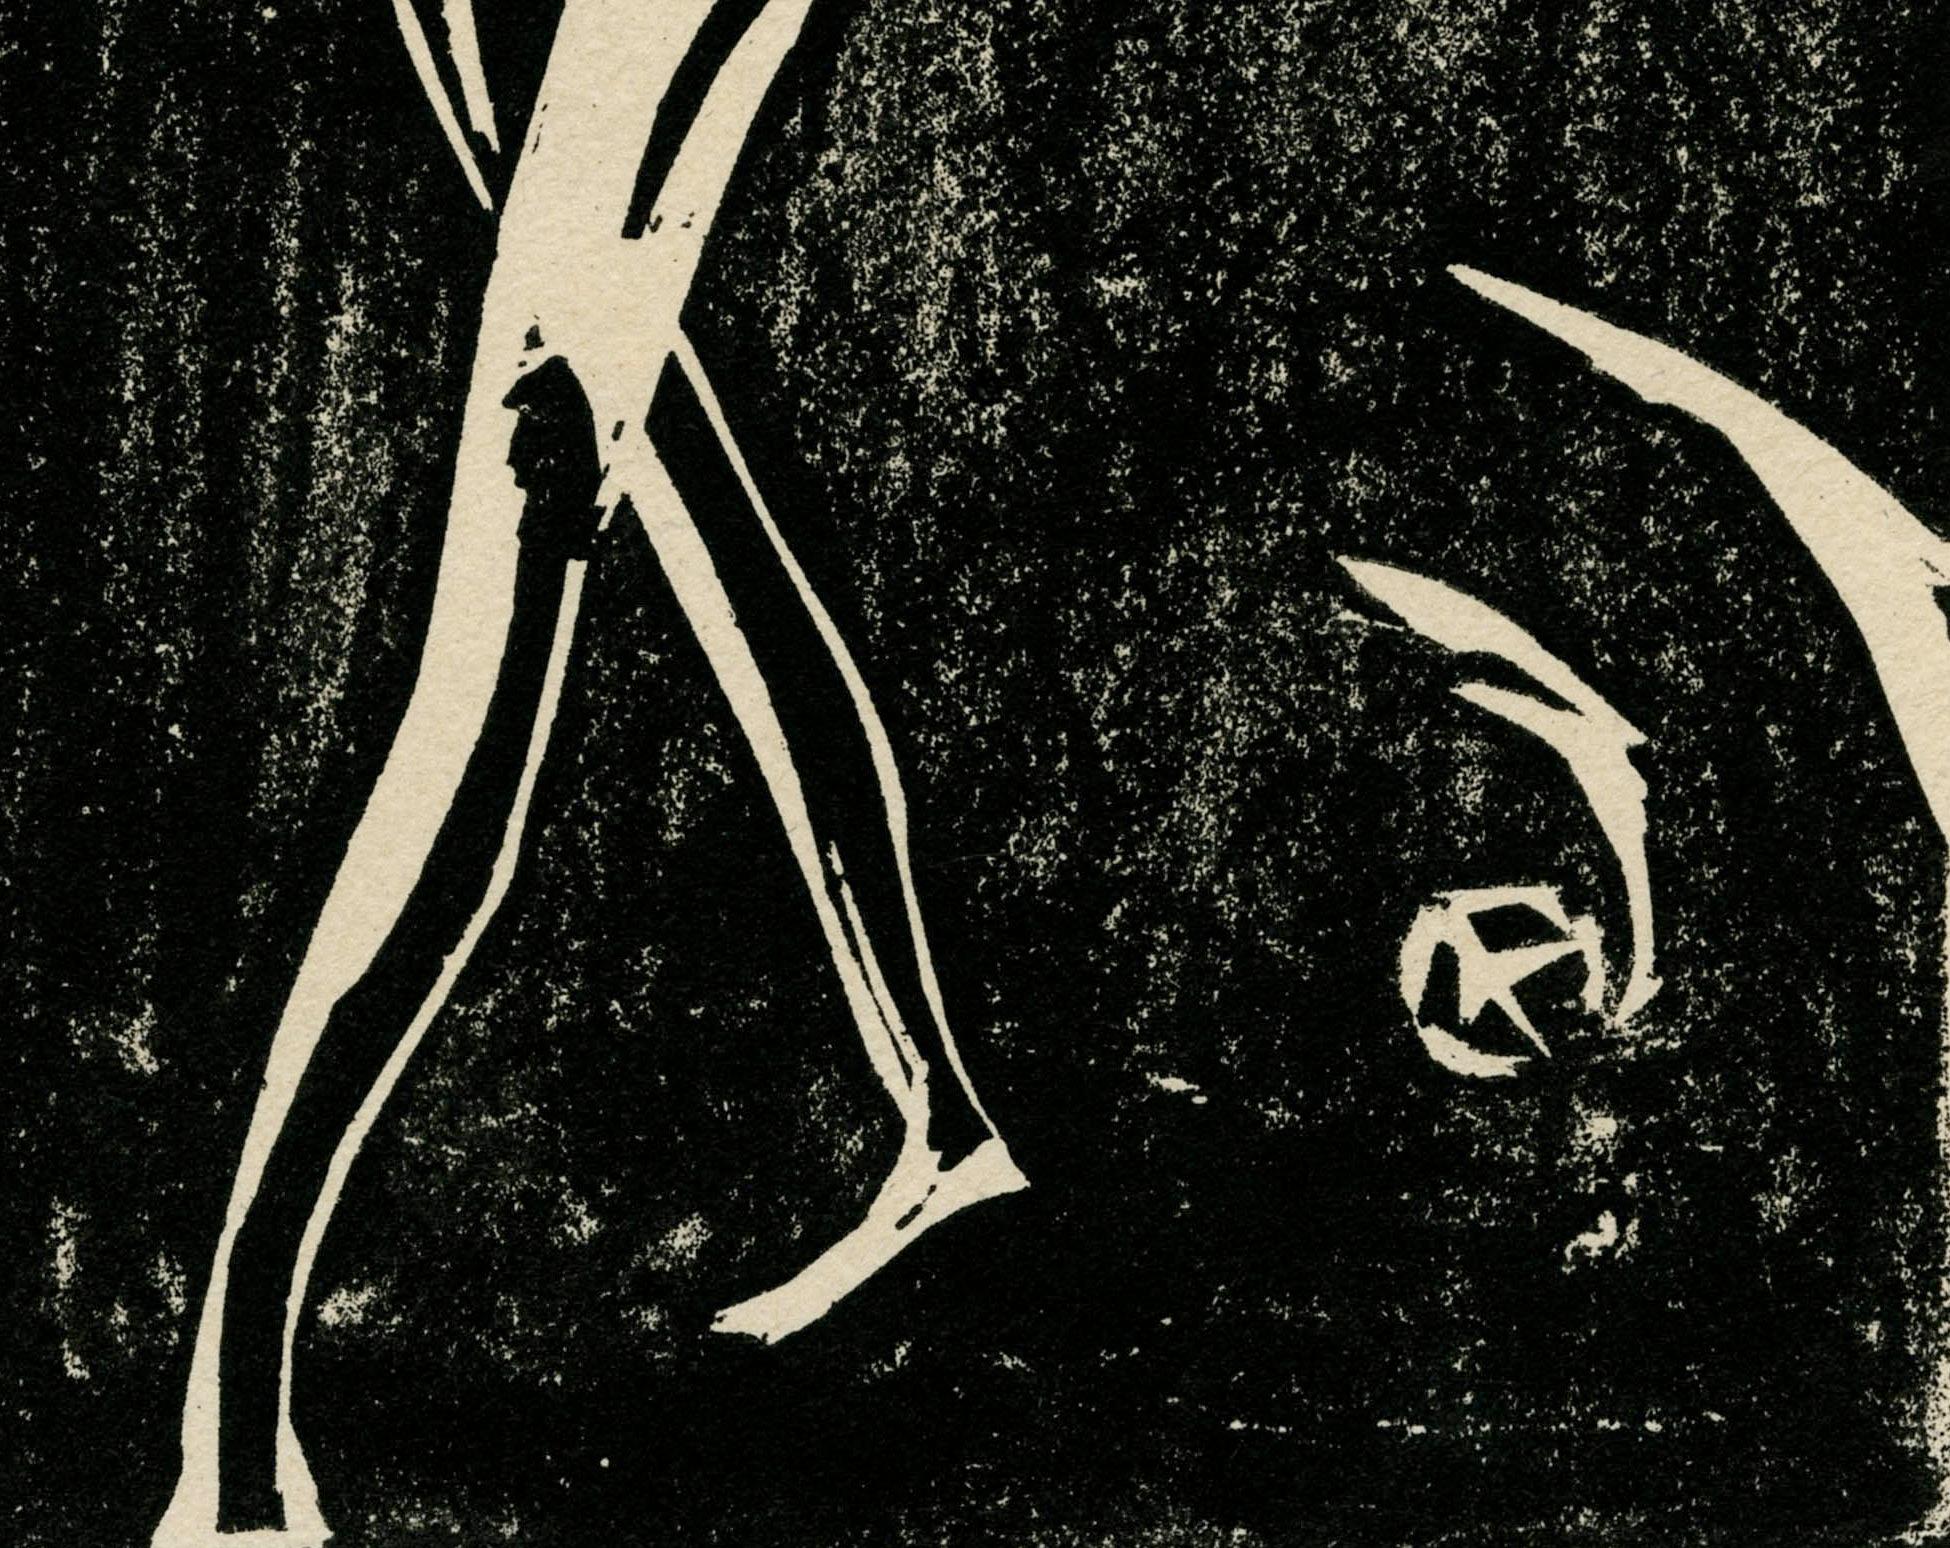 Ecce Homo Platte X
Holzschnitt, 1921
Signiert, betitelt und datiert mit Bleistift vom Künstler (siehe Fotos)
Auflage: Einer von zwei bekannten Abdrücken
Dieses Bild war der Katalogexpertin Ingrid Rose 1984 unbekannt, als sie den Katalog der